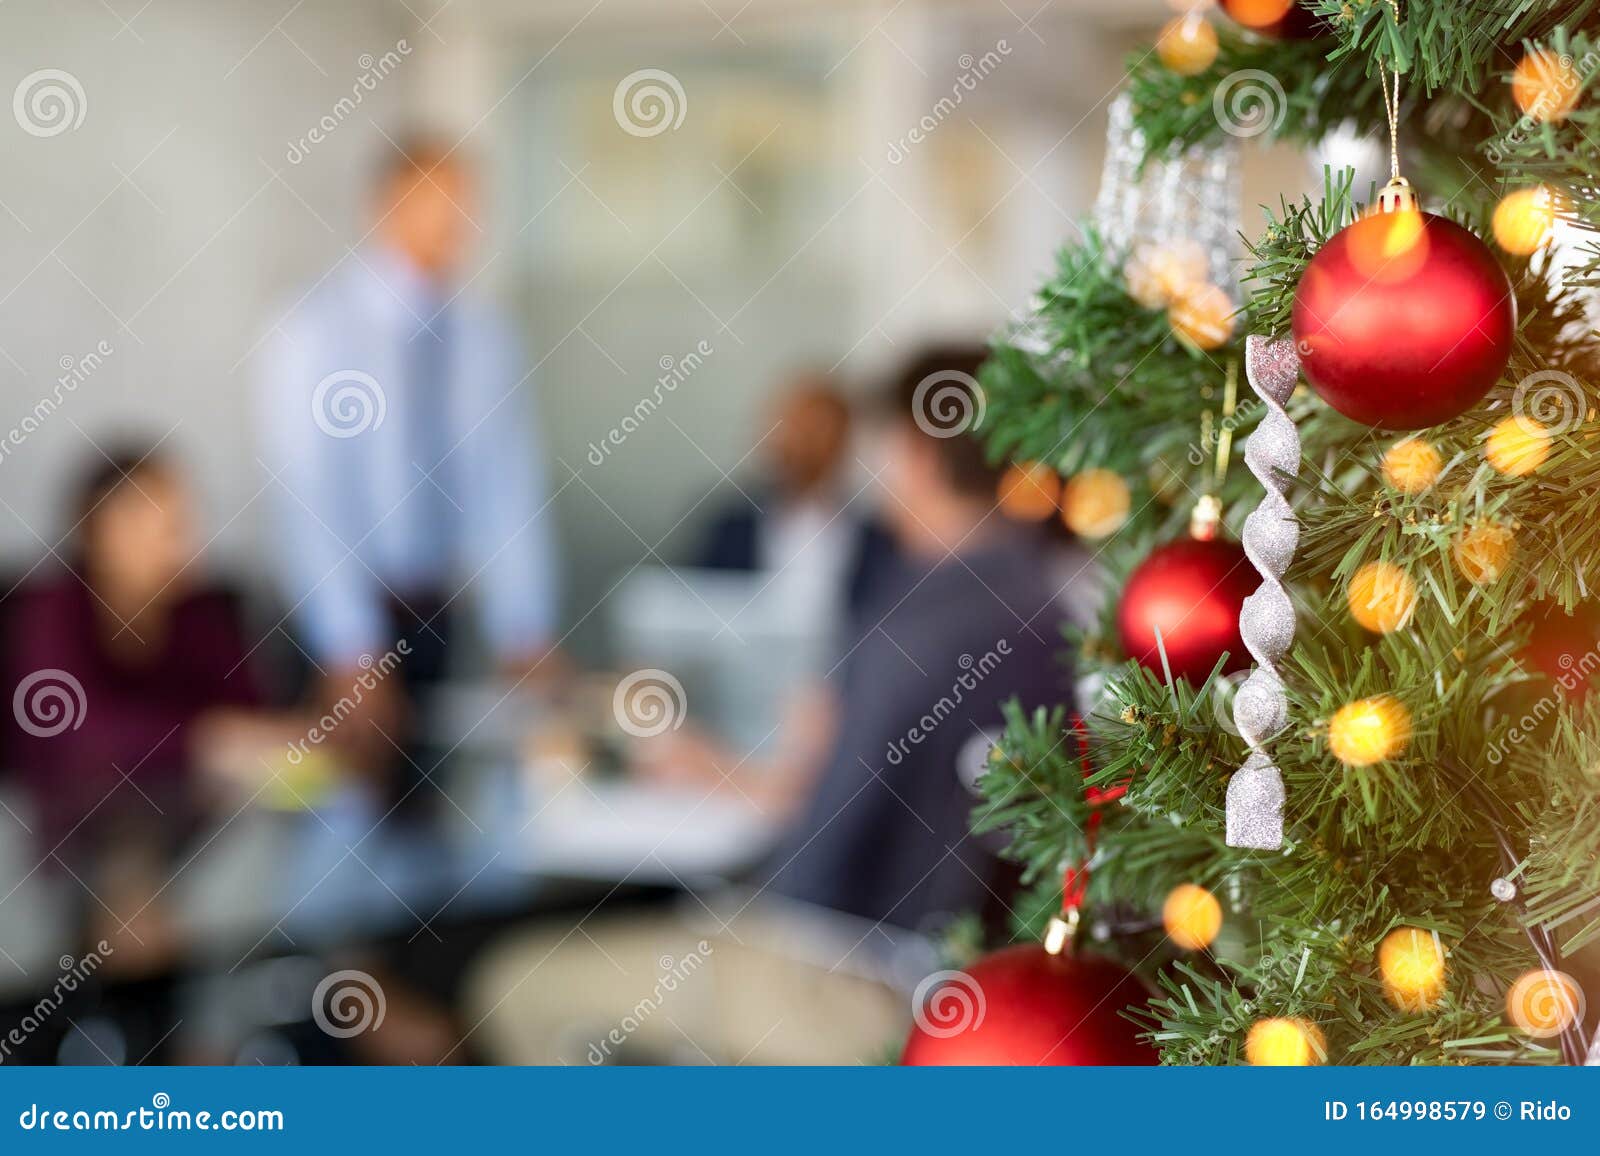 Hãy thể hiện tình yêu thương của bạn với cây thông Giáng sinh và trang trí bàn làm việc của mình ngay từ bây giờ. Với hình ảnh cổ phiếu cây thông Giáng sinh trong văn phòng kinh doanh, bạn sẽ có được một không gian làm việc tràn đầy năng lượng và niềm vui.